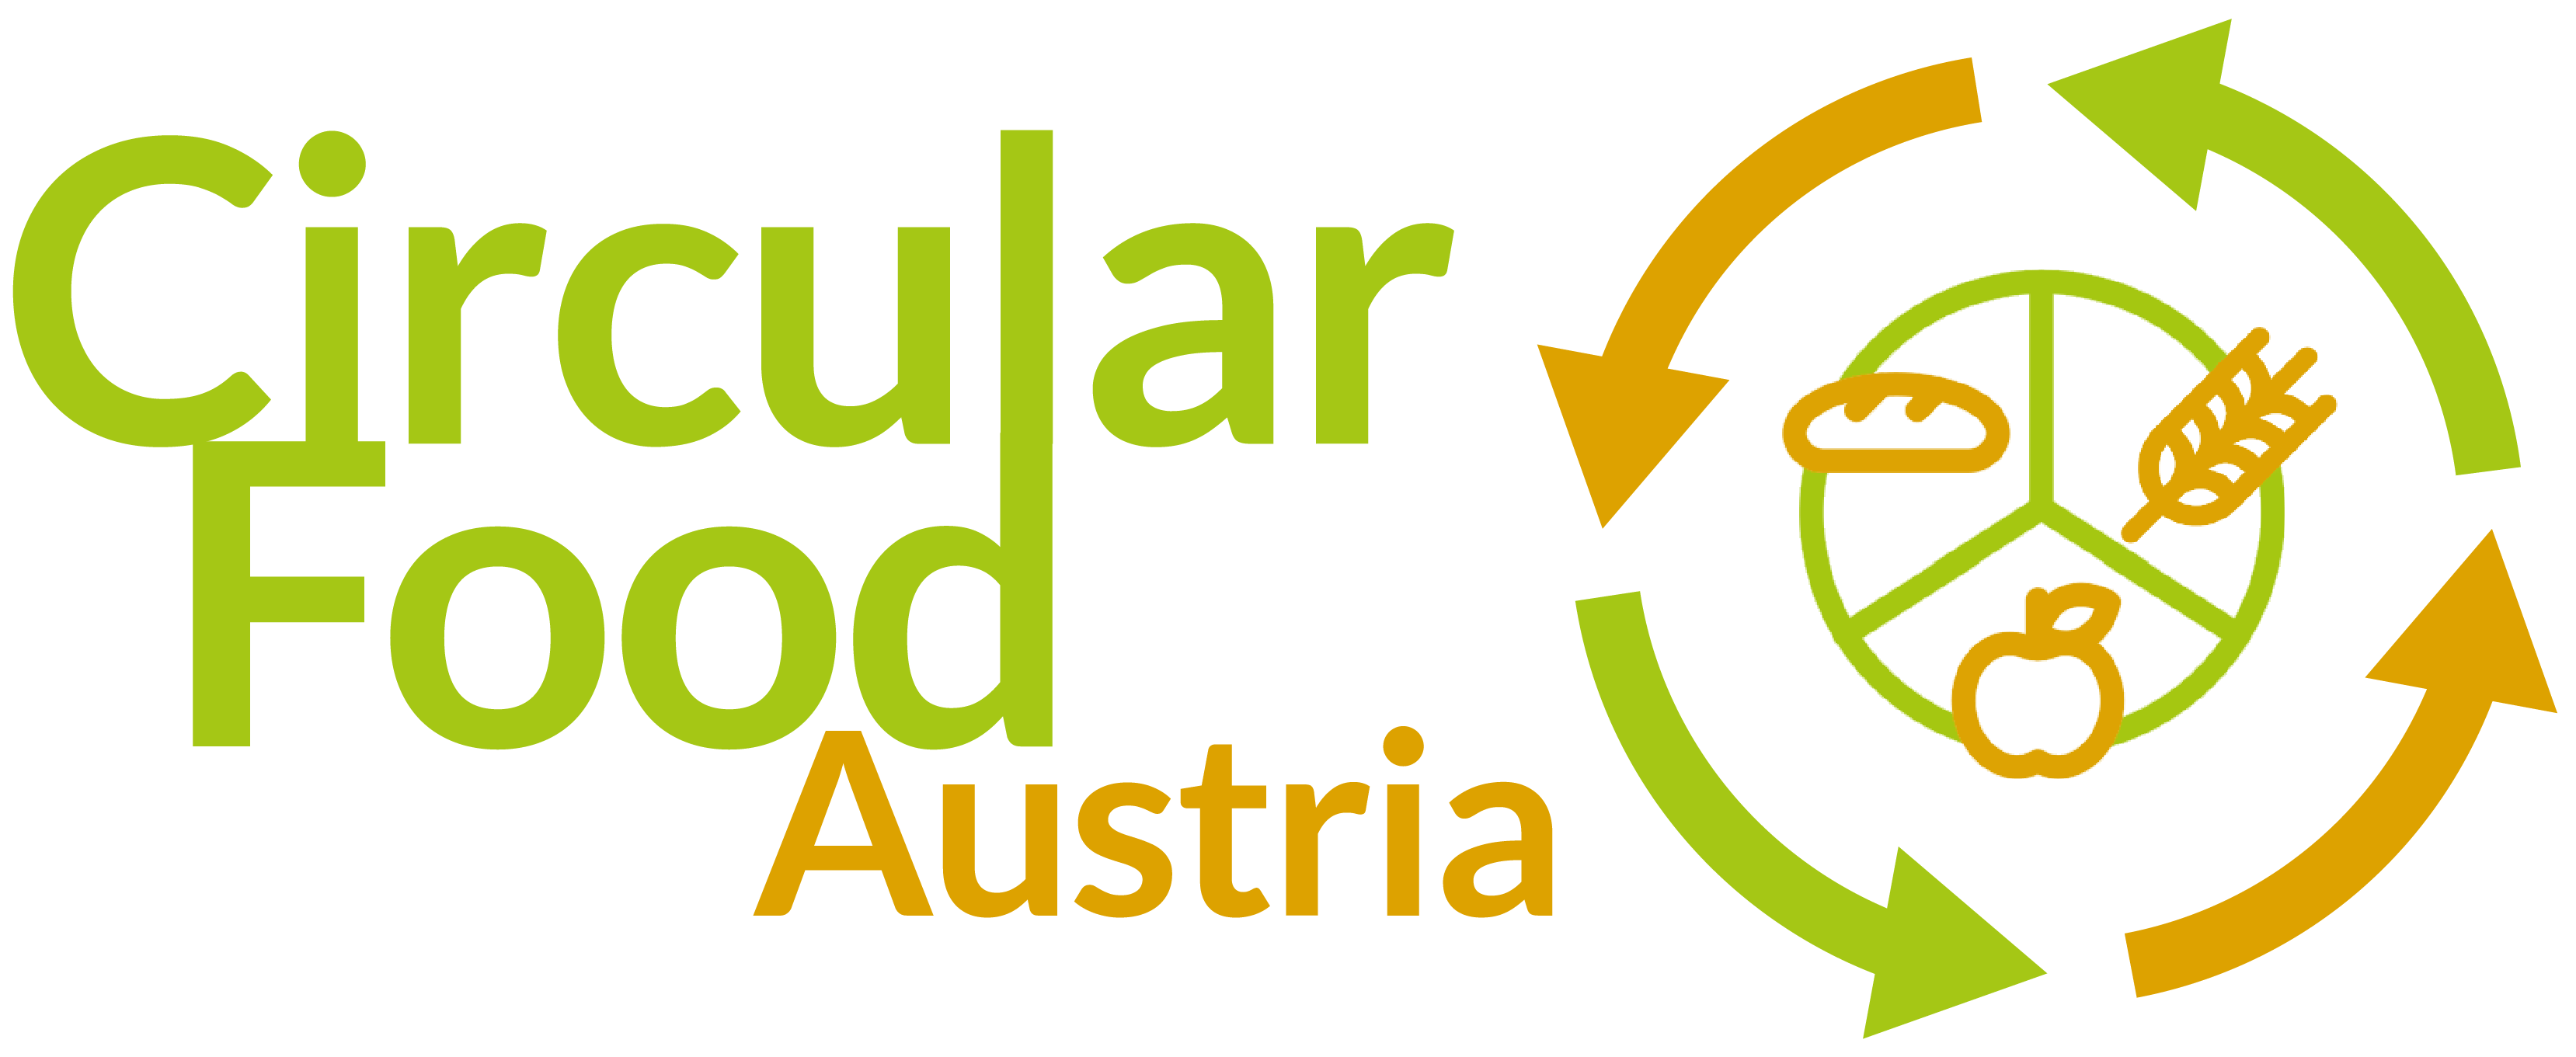 circular food austria